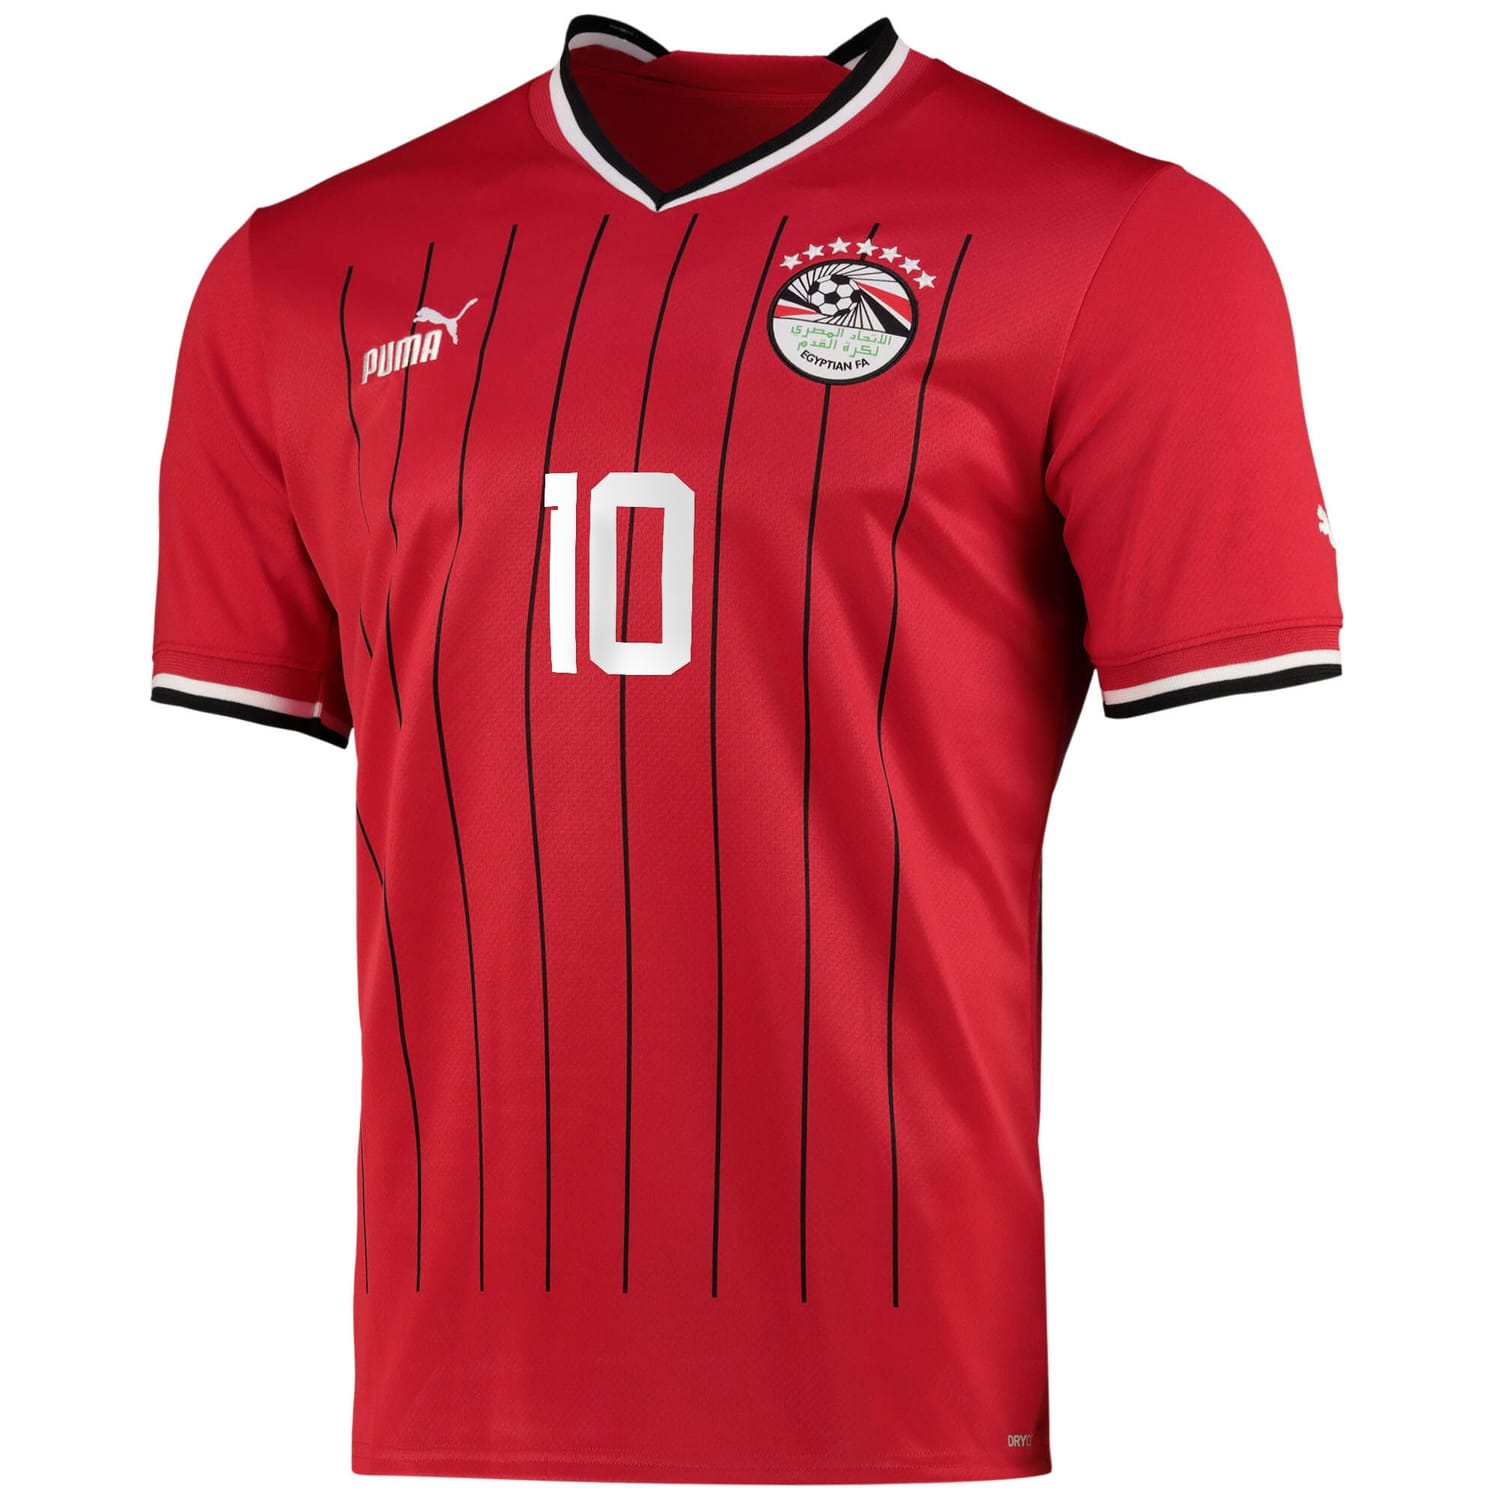 Egypt National Team Home Jersey Shirt player Mohamed Salah 10 printing for Men